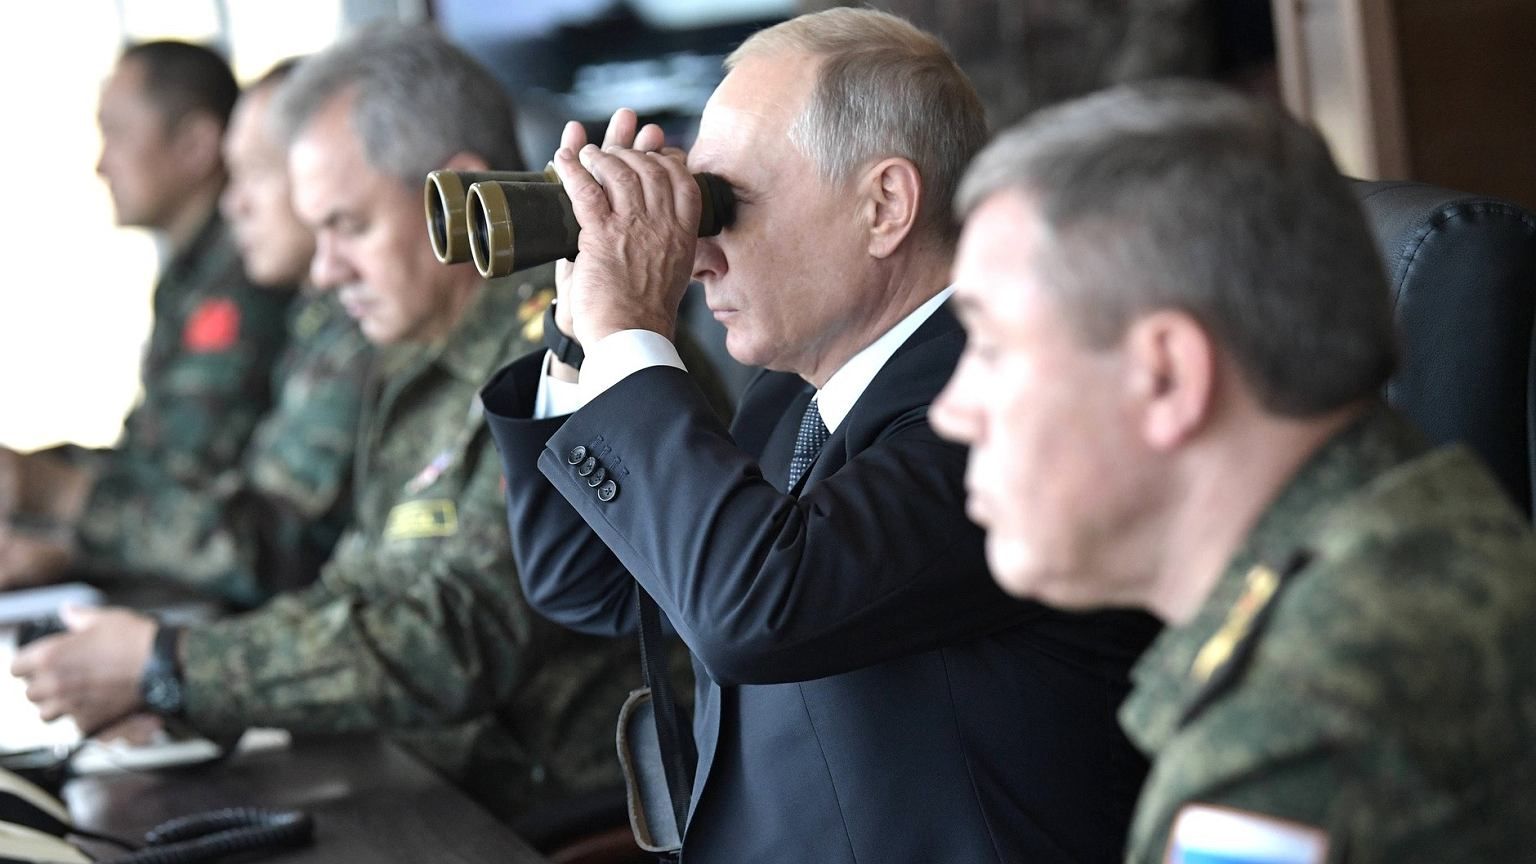 Що насправді на умі в Путіна: показова гра м’язами чи серйозні наміри вторгнення?